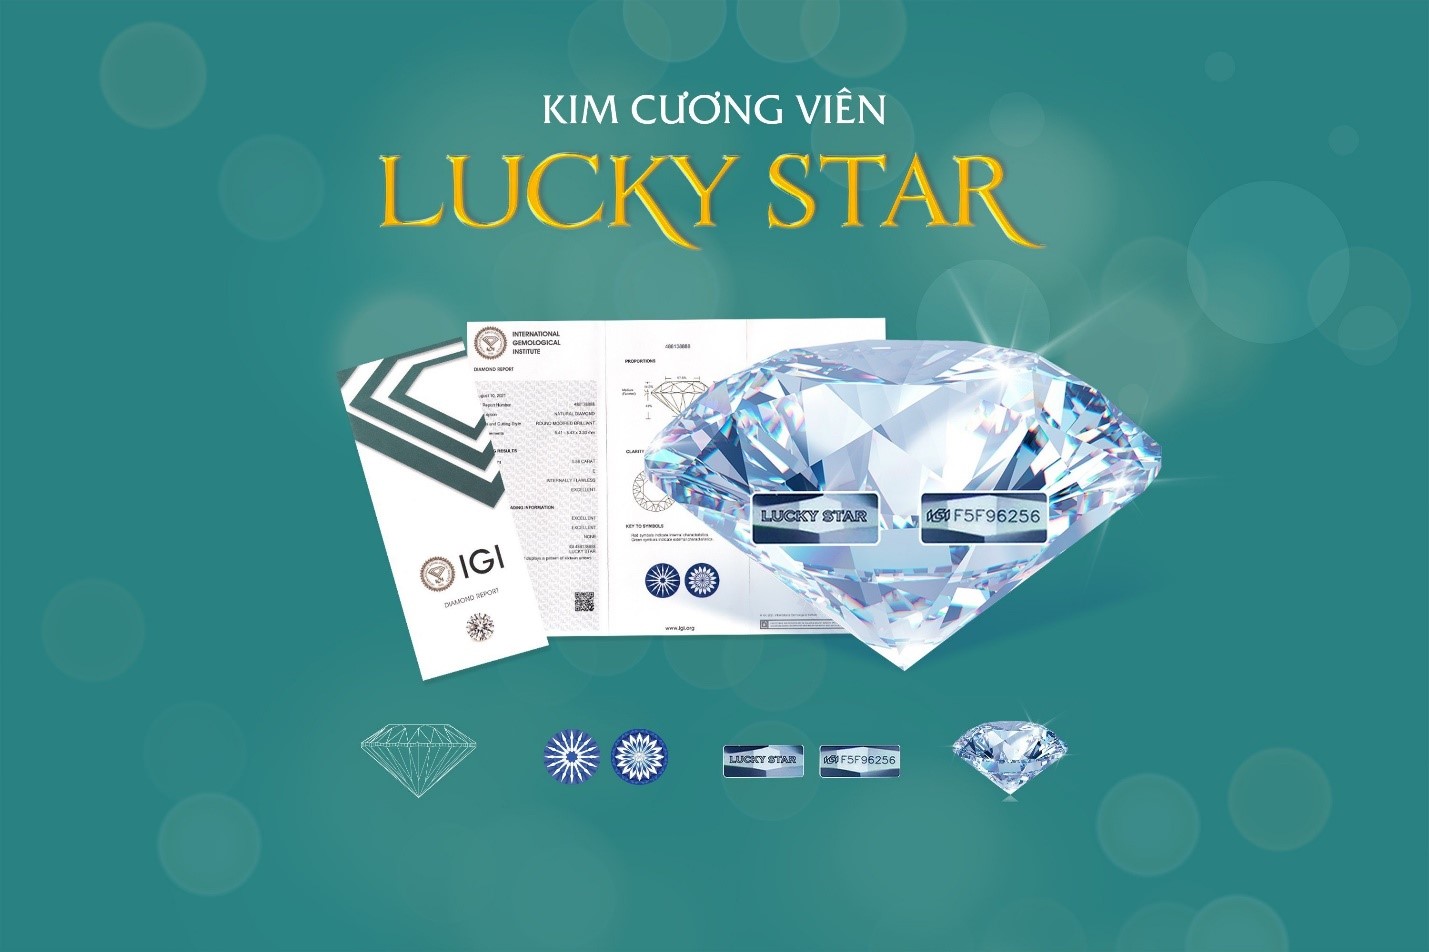 Kim cương Lucky Star sở hữu hiệu ứng ngôi sao may mắn 16 cánh cùng hoa tình yêu 16 cánh.Nguồn ảnh: Doji